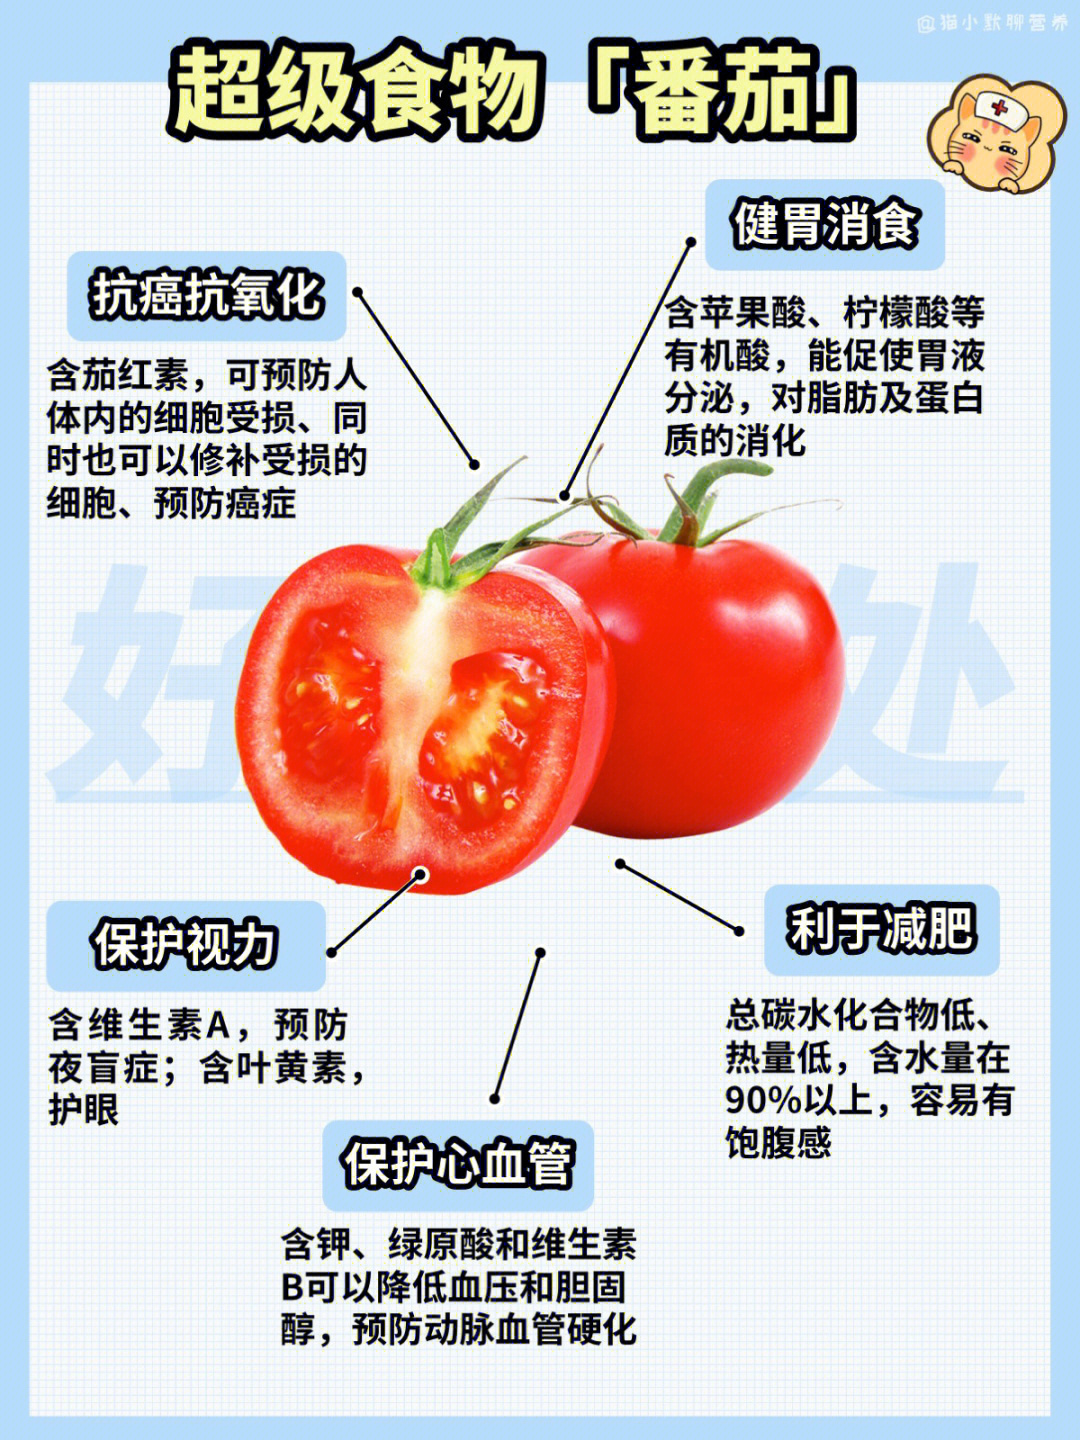 煮熟后茄红素更多小番茄常被当做水果,当甜点生吃在营养上,二者结构